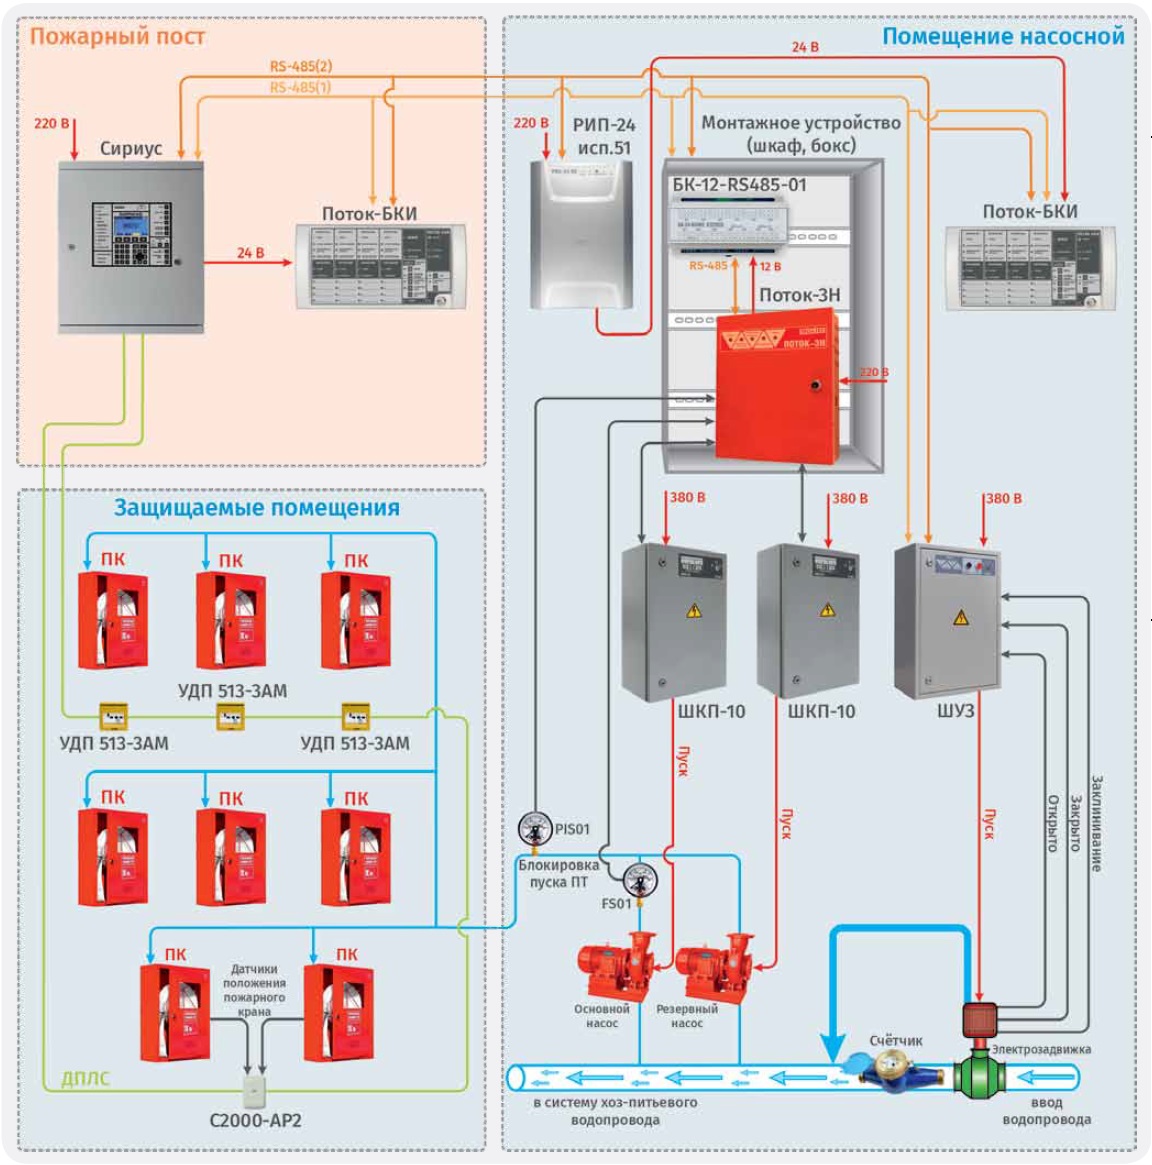 Структурная схема внутреннего противопожарного водопровода с использованием ШКП и ШУЗ